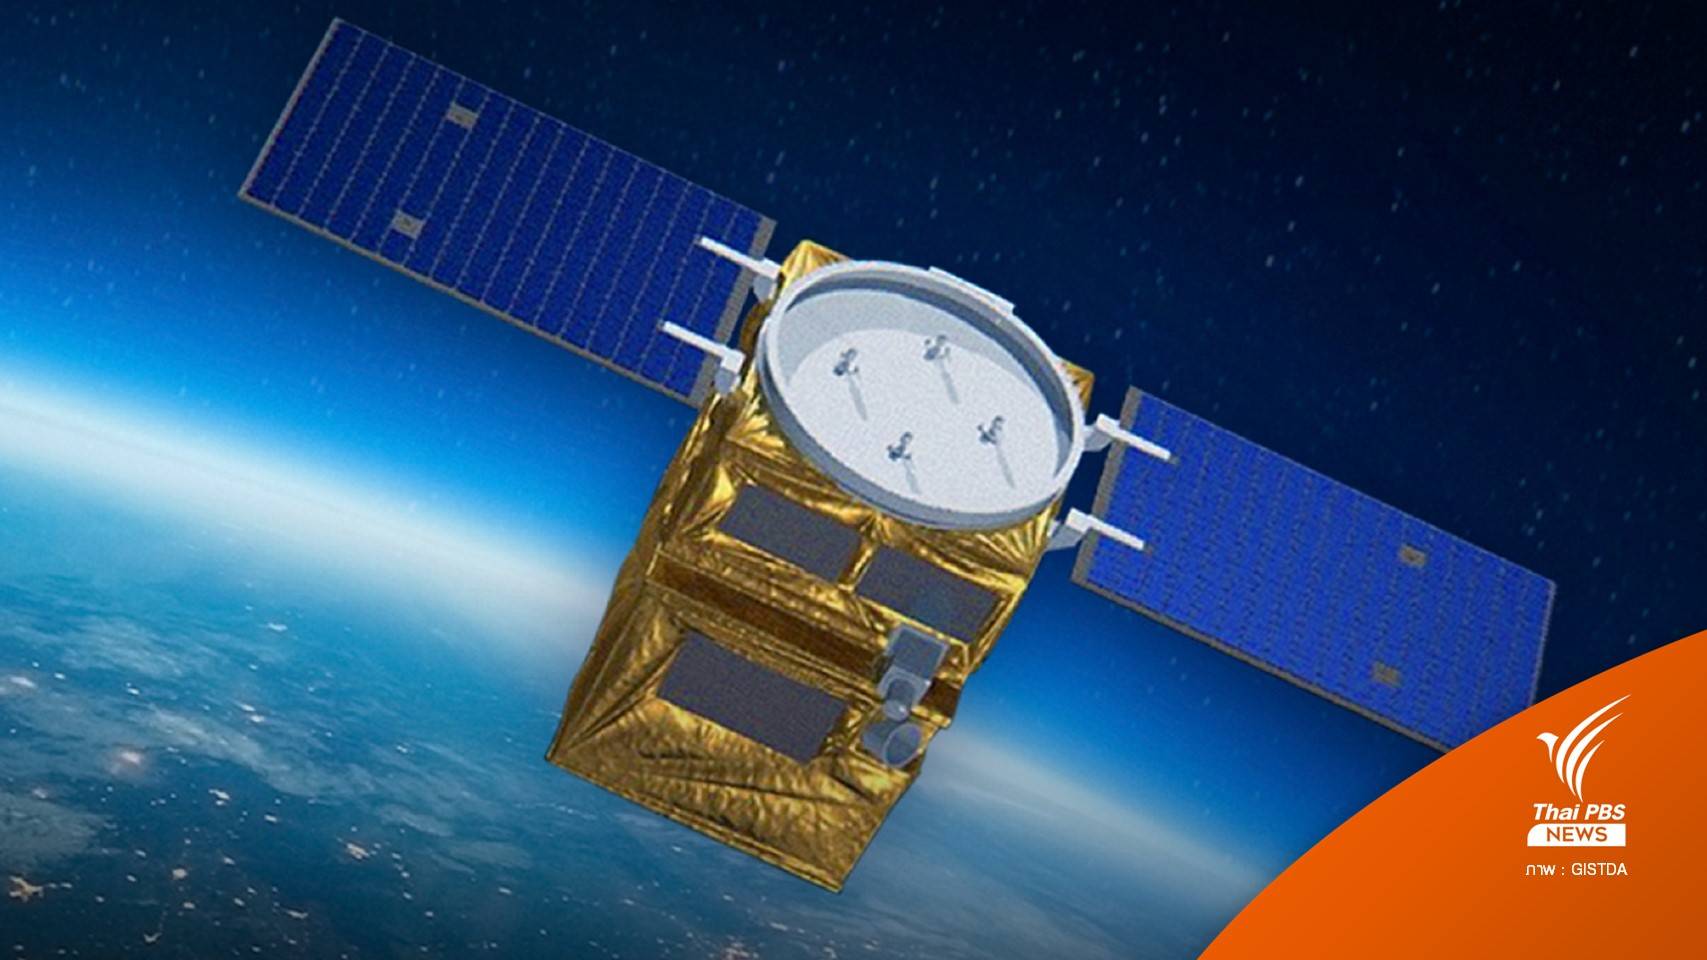 ไทยเตรียมส่งดาวเทียมสำรวจโลก THEOS-2 ขึ้นสู่อวกาศปีนี้